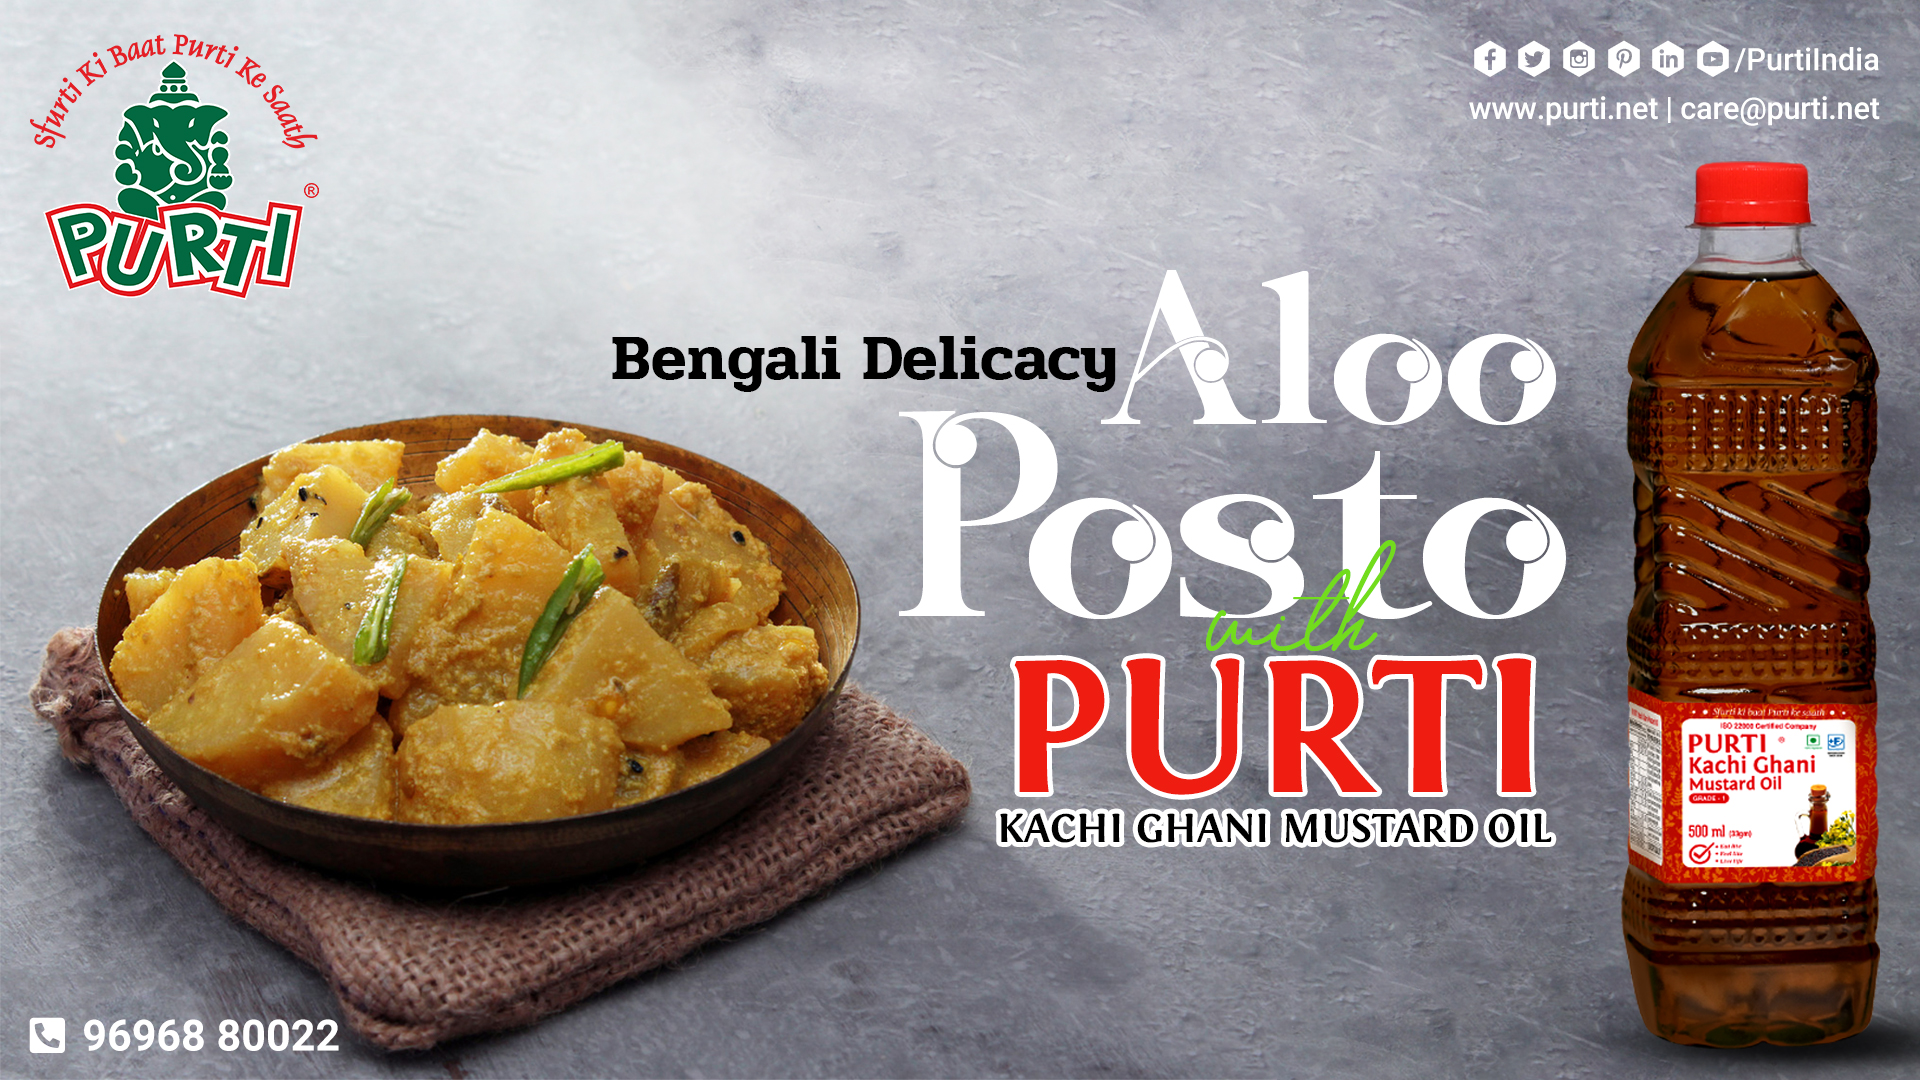 Aloo Posto Recipe with Purti Kachi Ghani Mustard Oil